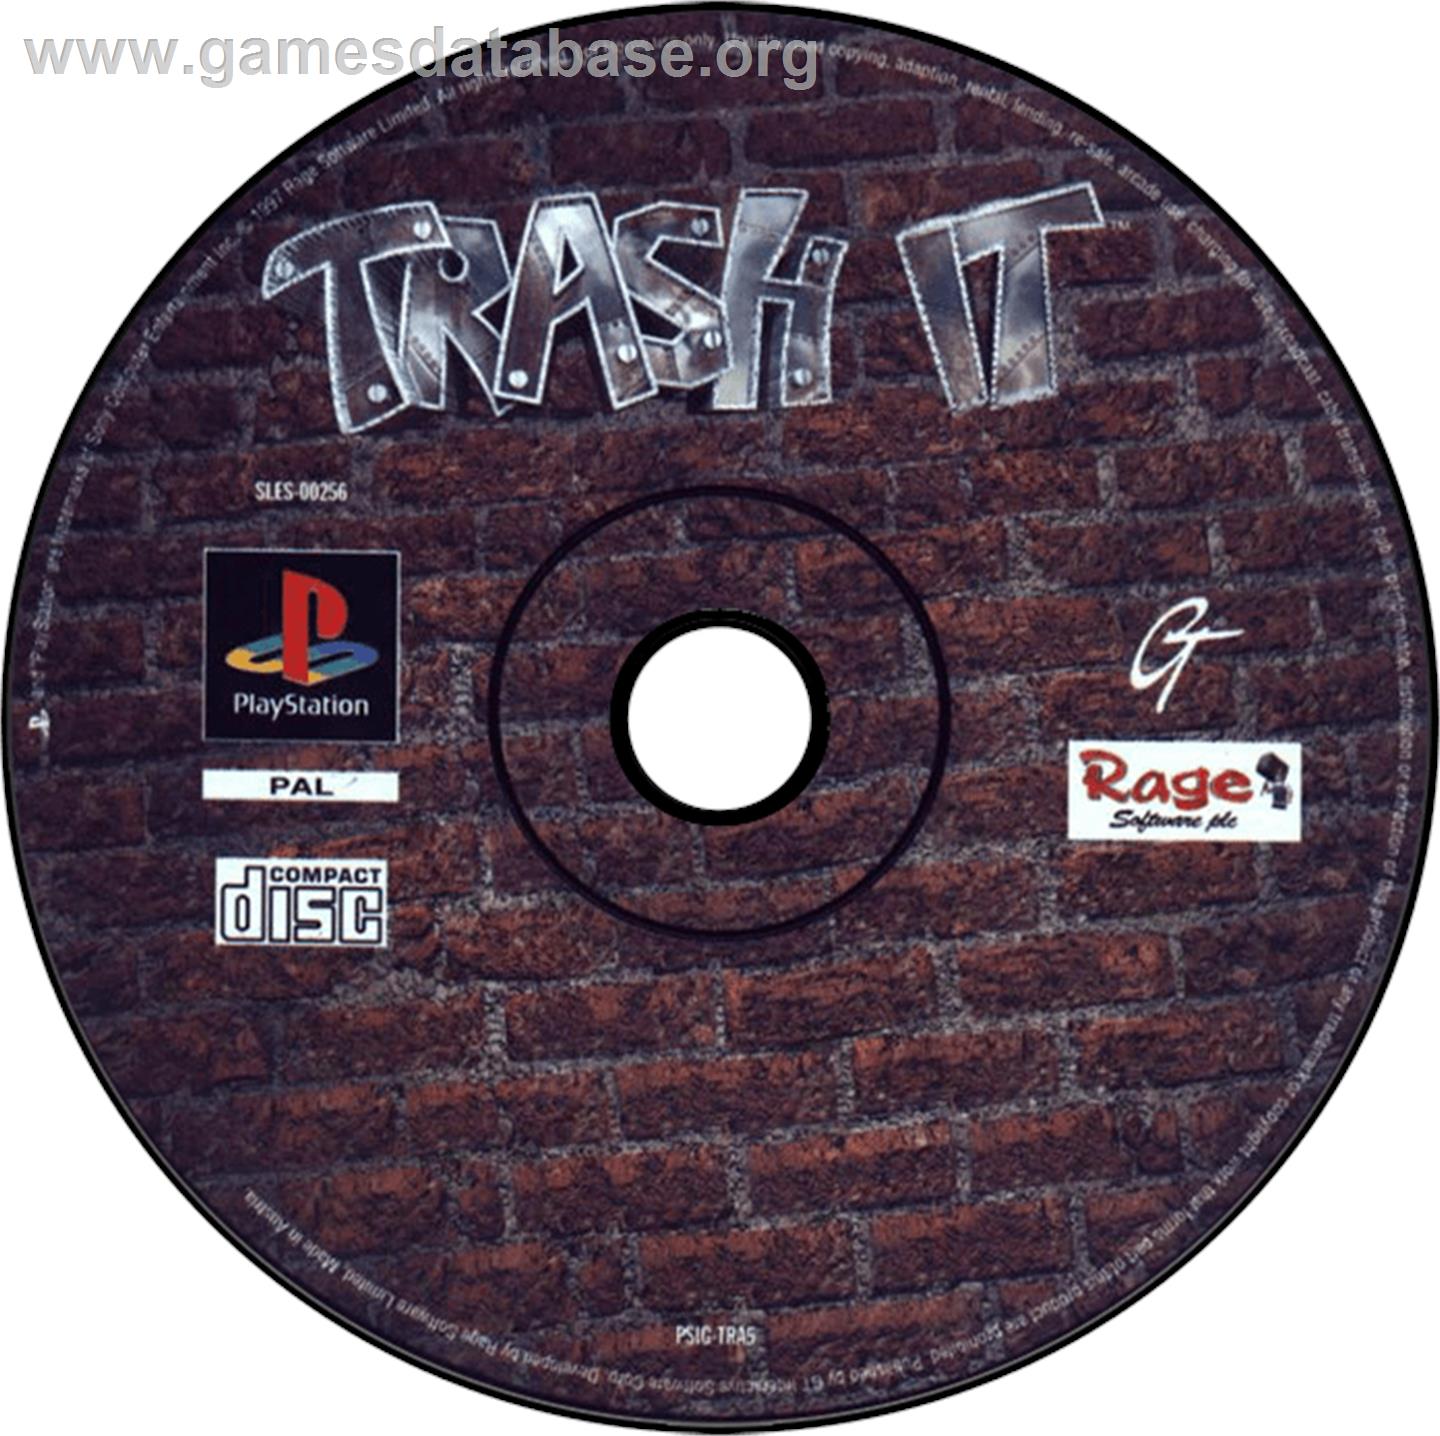 Trash It - Sony Playstation - Artwork - Disc